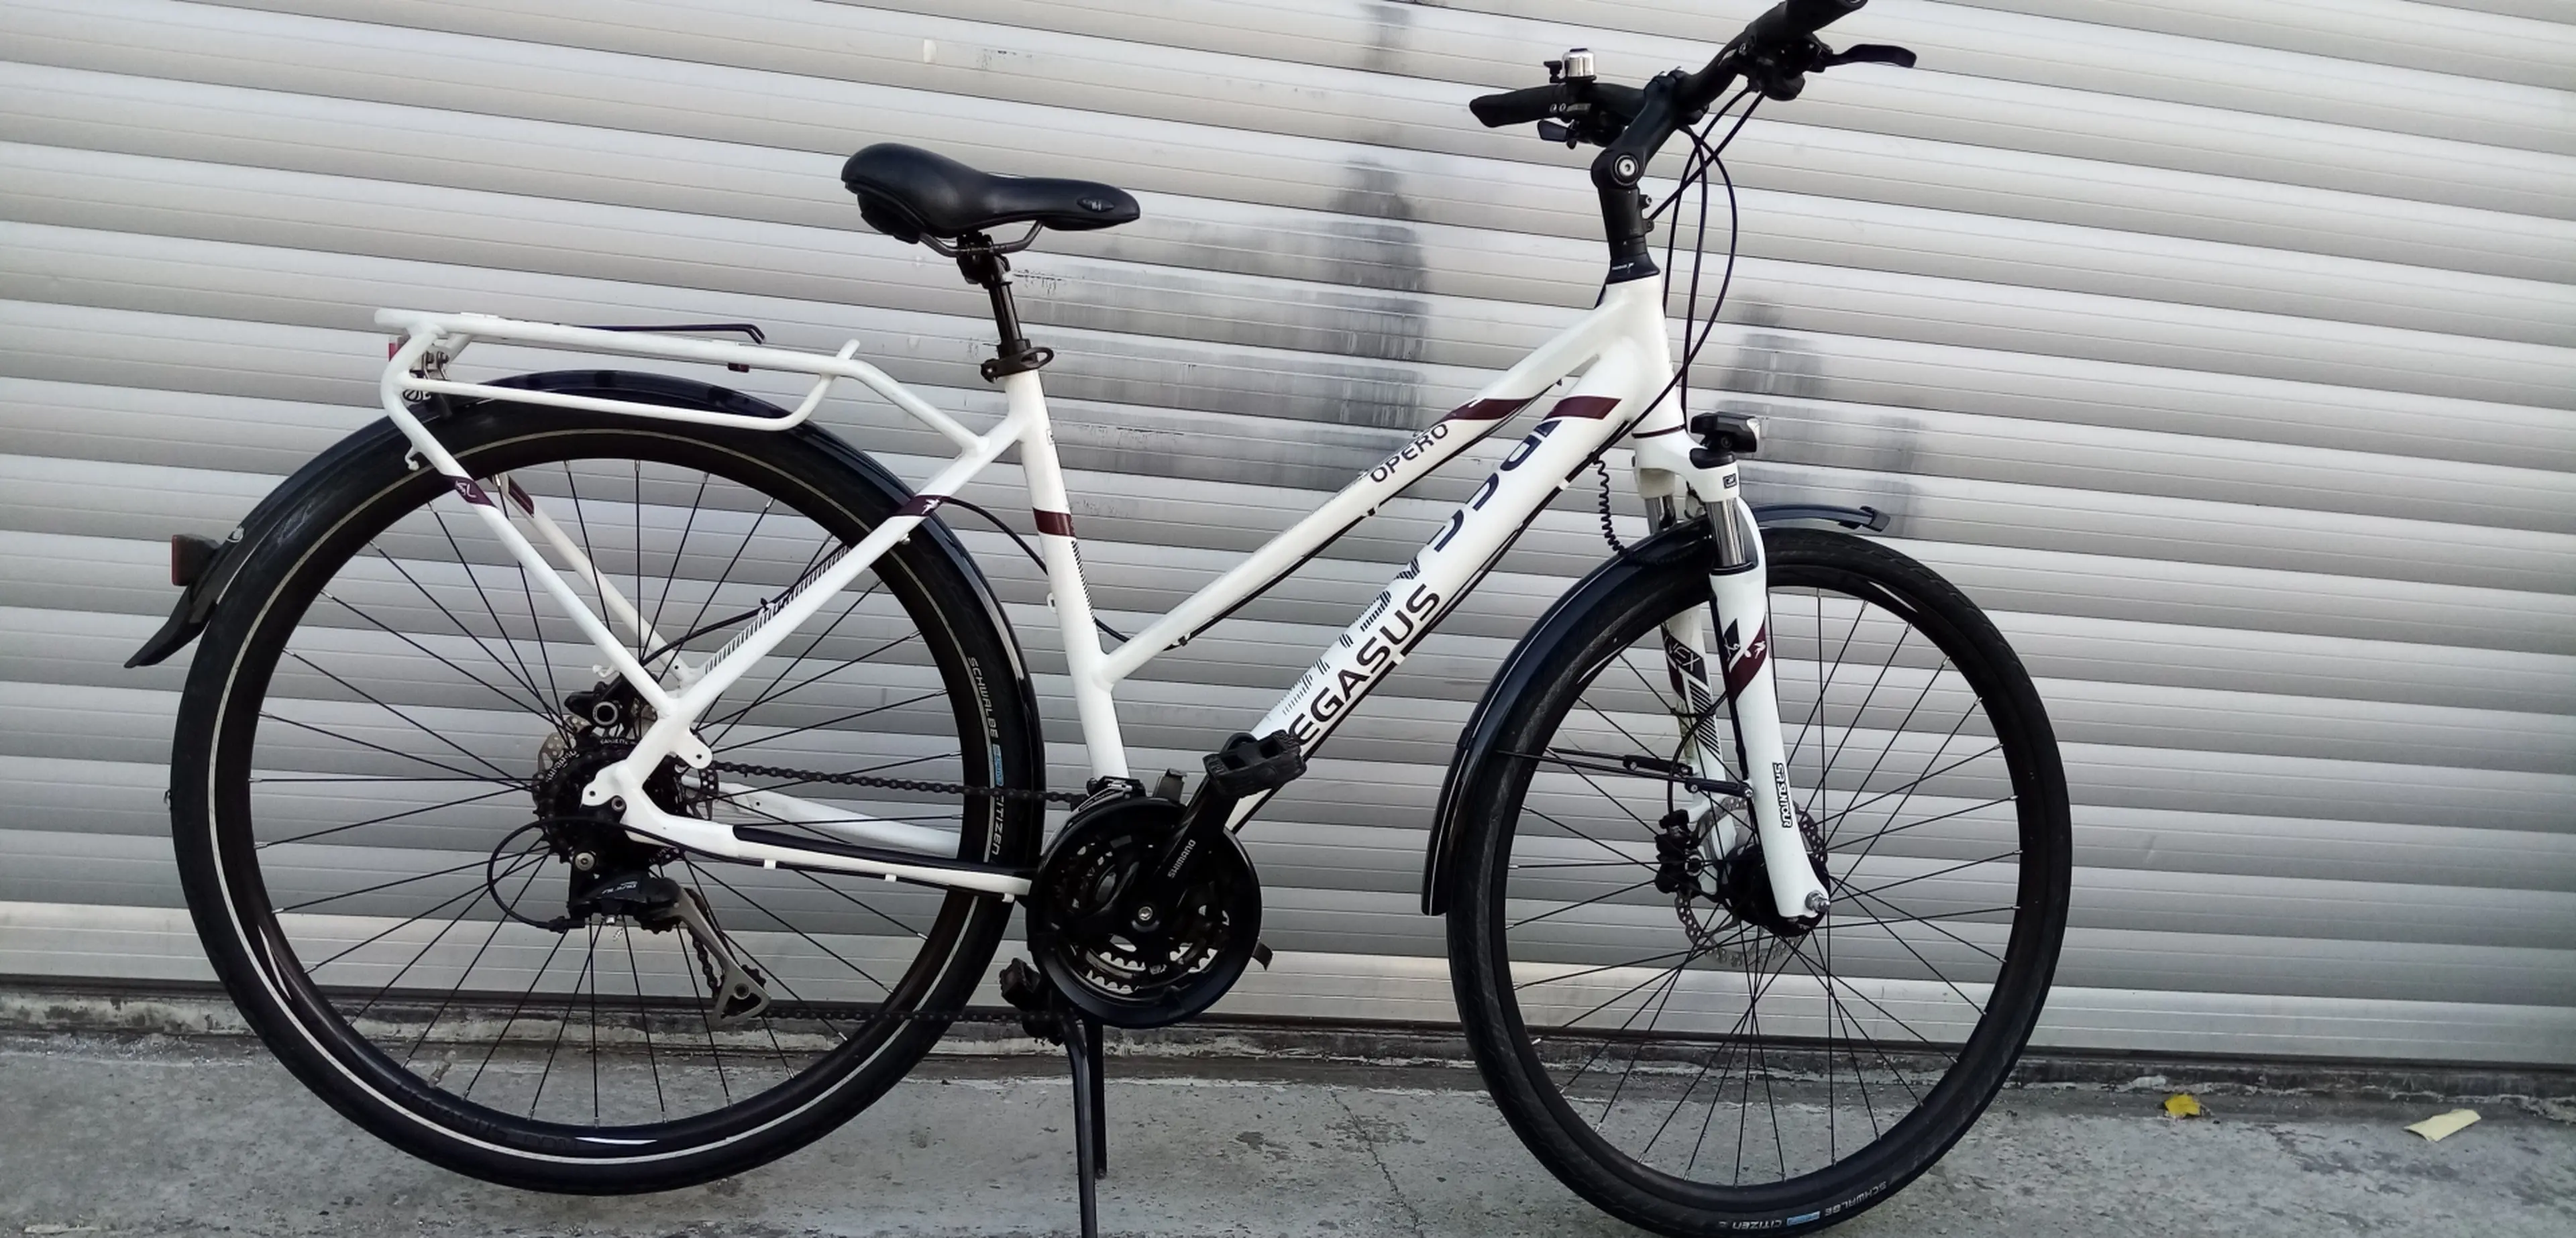 Image Vand bicicleta dame aluminiu PEGASUS cu fr pe disc hidraulica